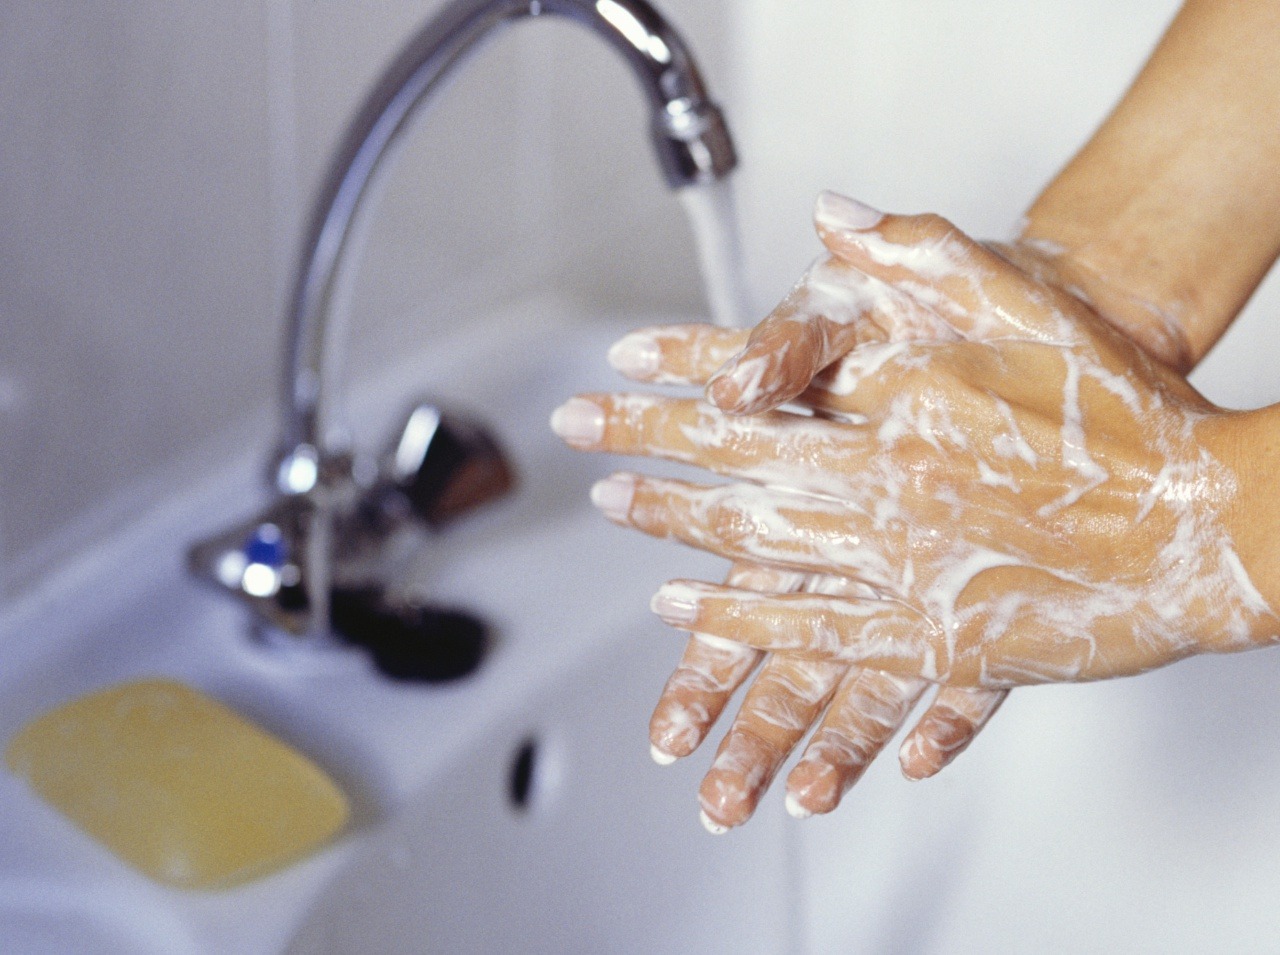 Zdieľať mydlo nie je dobrý nápad, najmä ak máte oslabenú imunitu. 